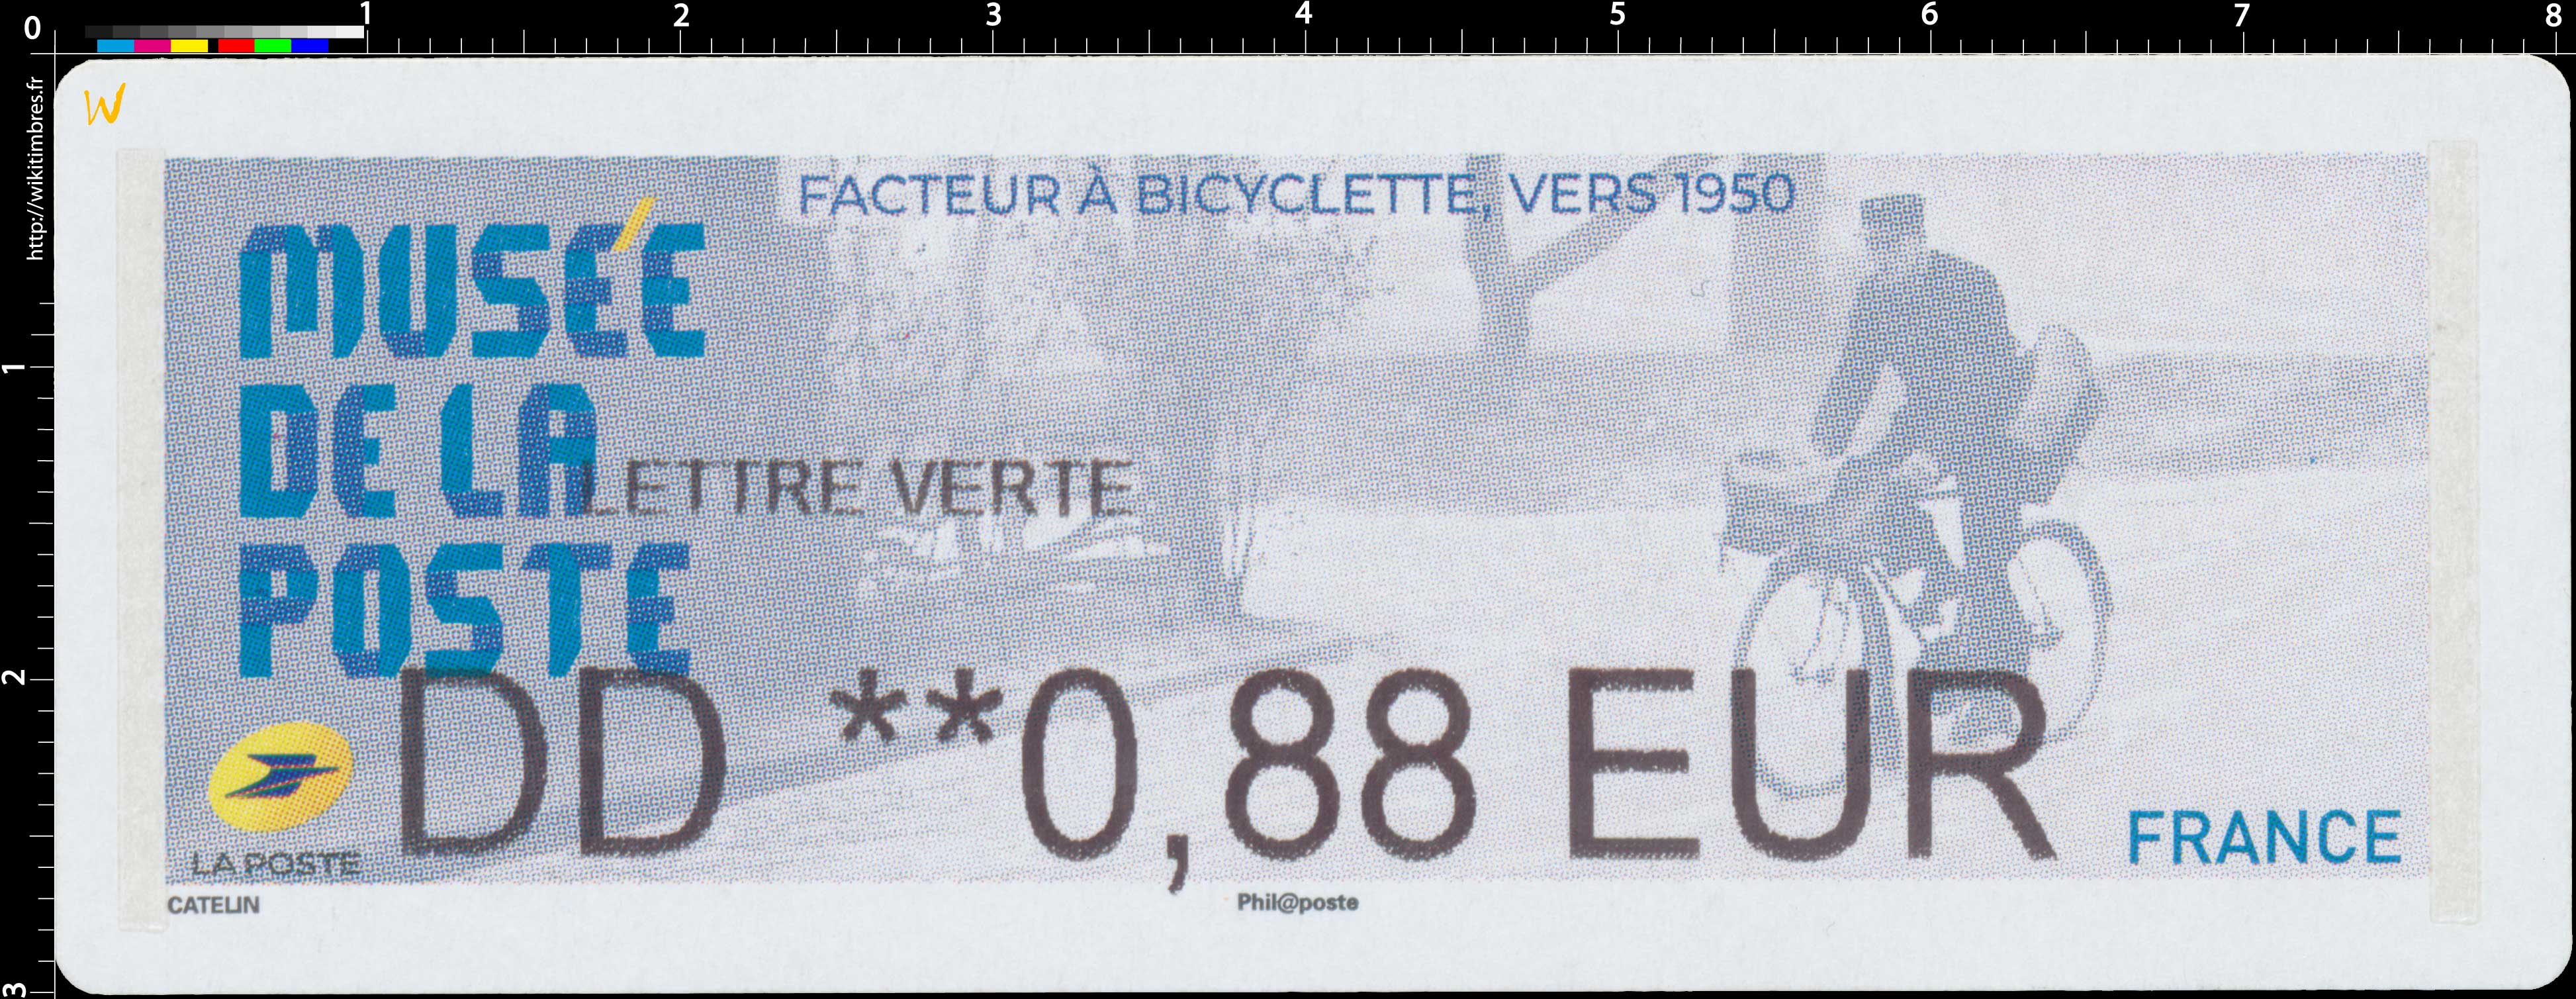 2019 MUSÉE DE LA POSTE - FACTEUR A BICYCLETTE VERS 1950